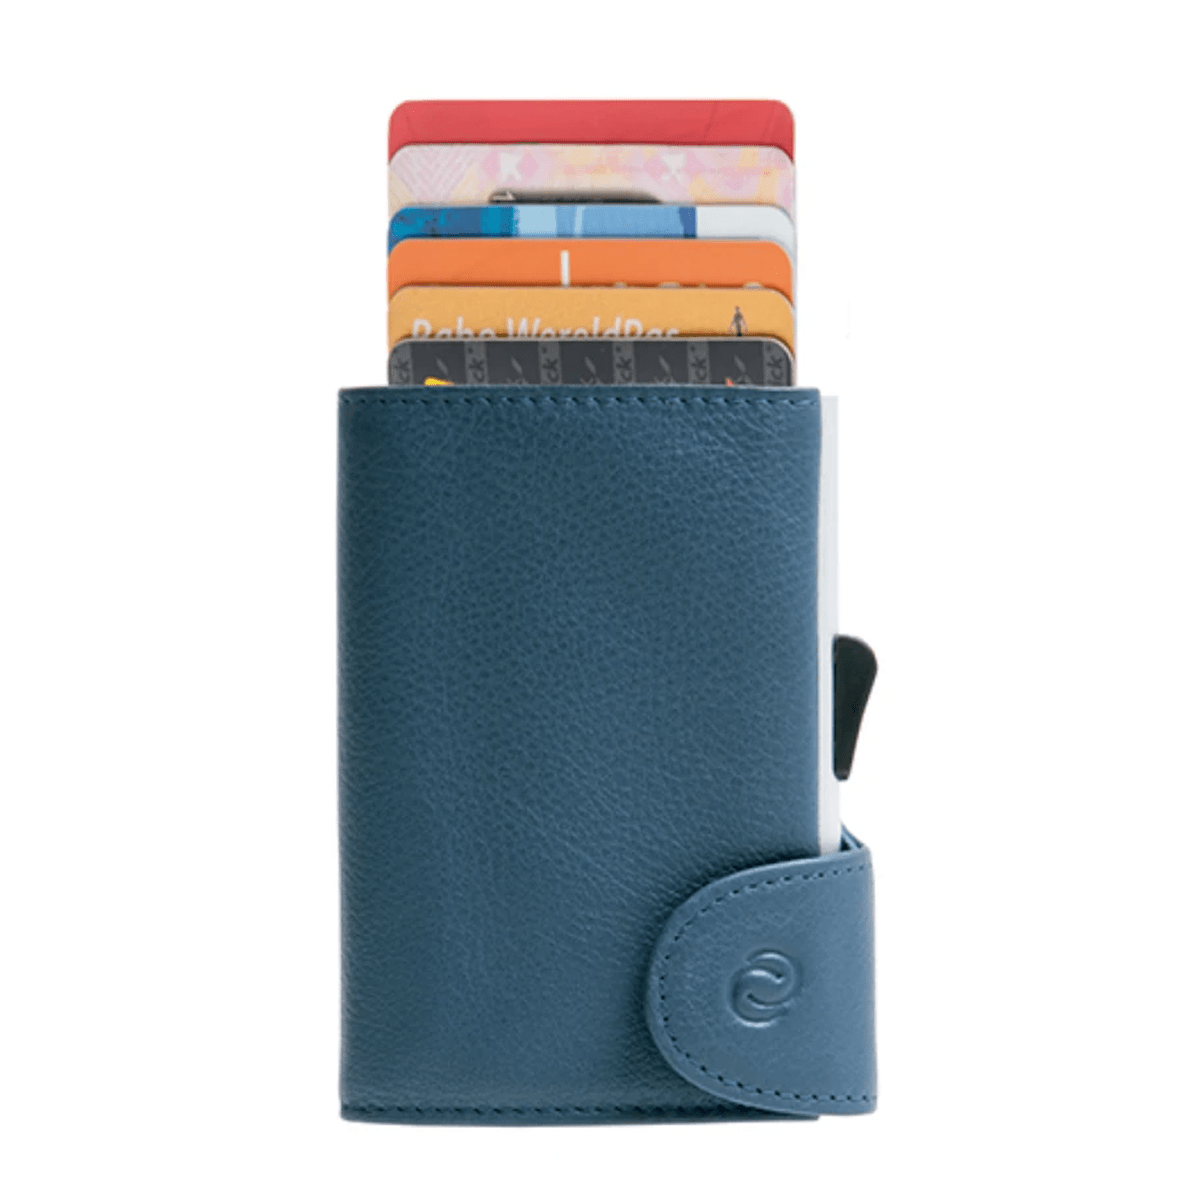 C-Secure XL RFID card holder & wallet - XD Design